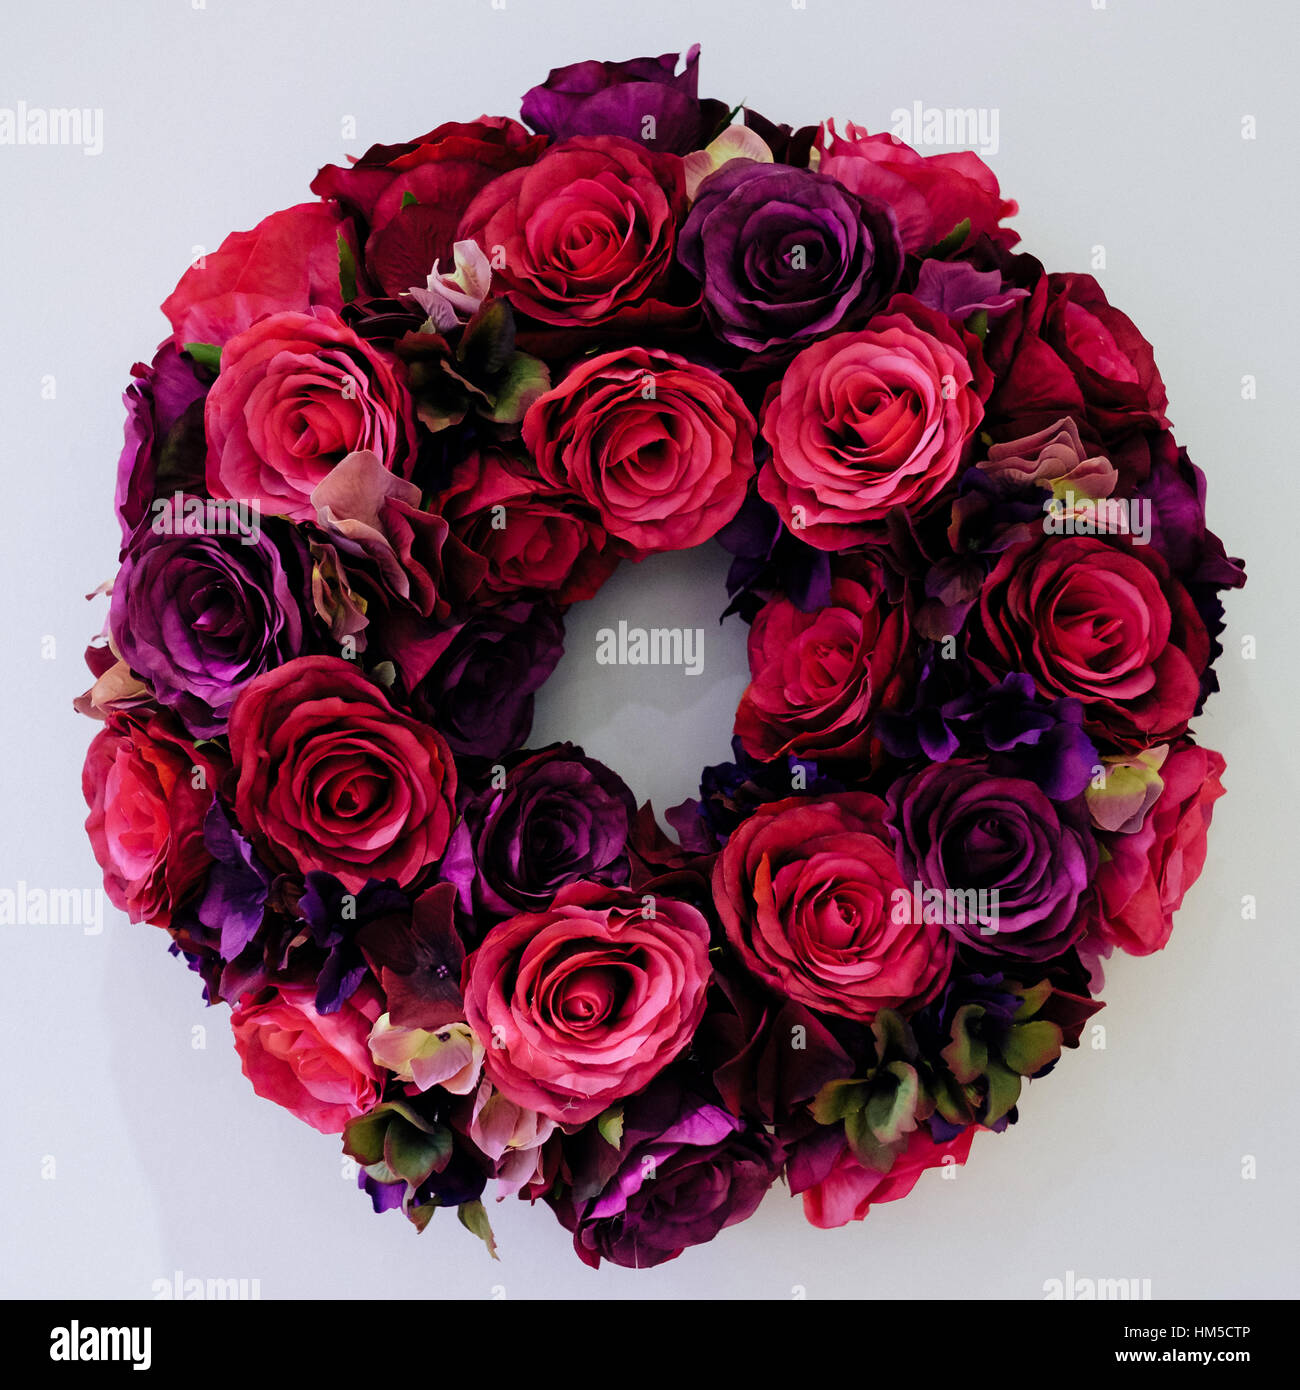 Fait à la main une couronne circulaire de fleurs en soie fabriqués à partir de roses rouge et violet Banque D'Images